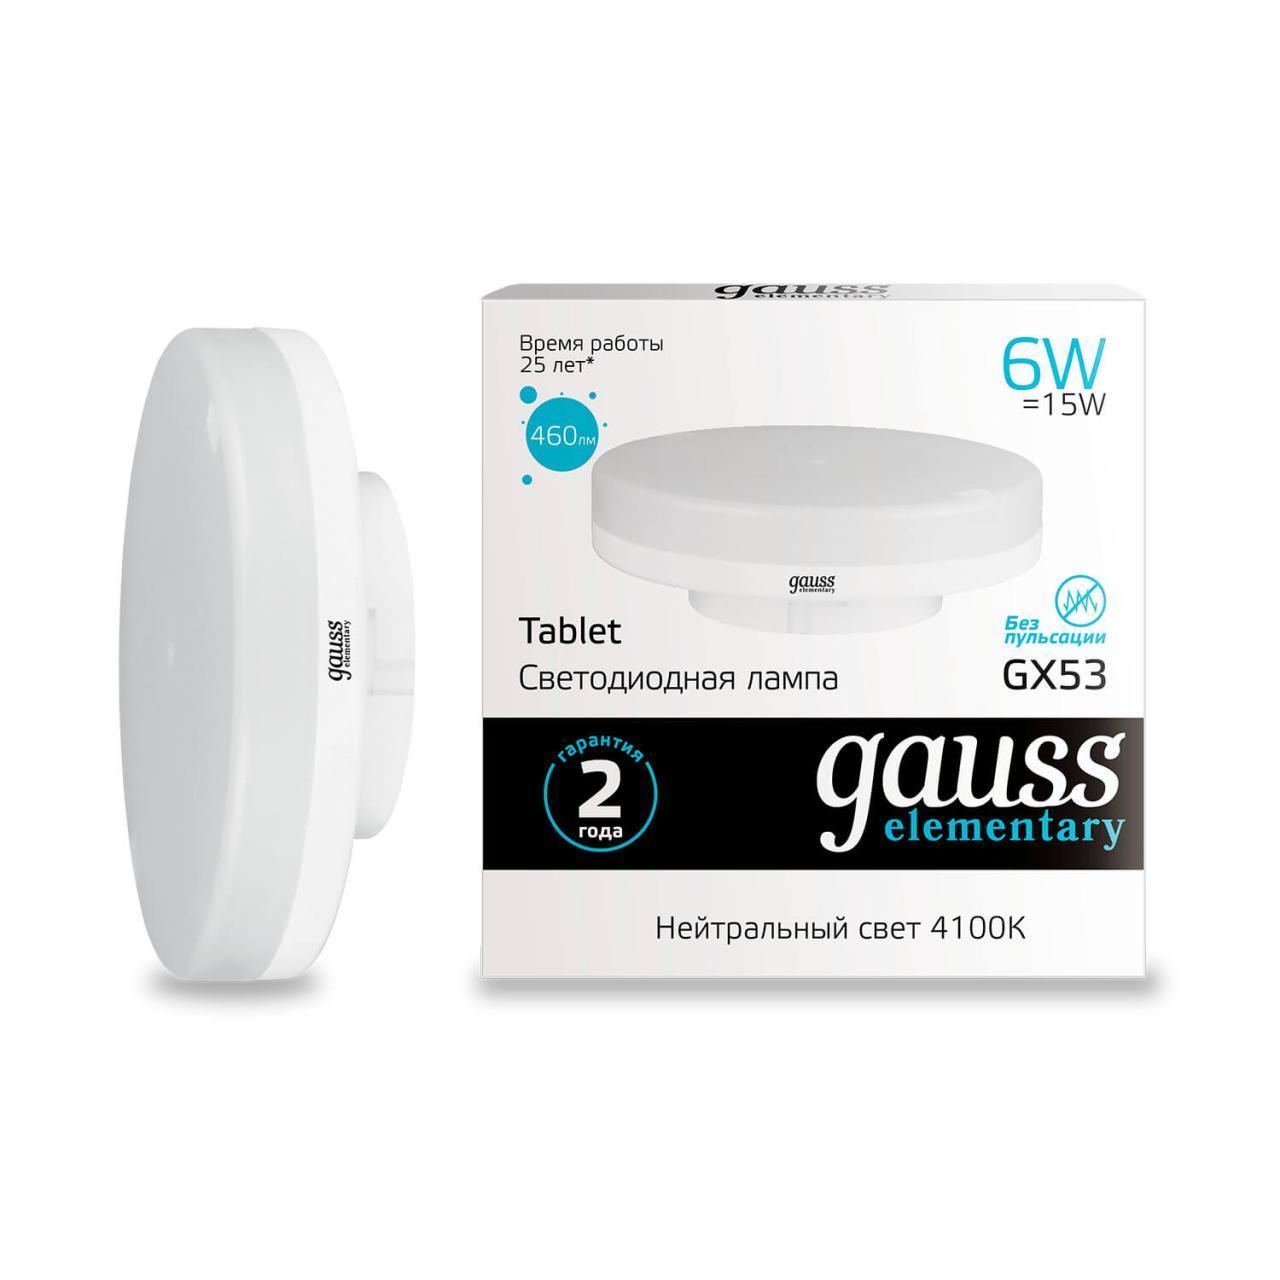   Gauss GX53 6W 4100K  83826